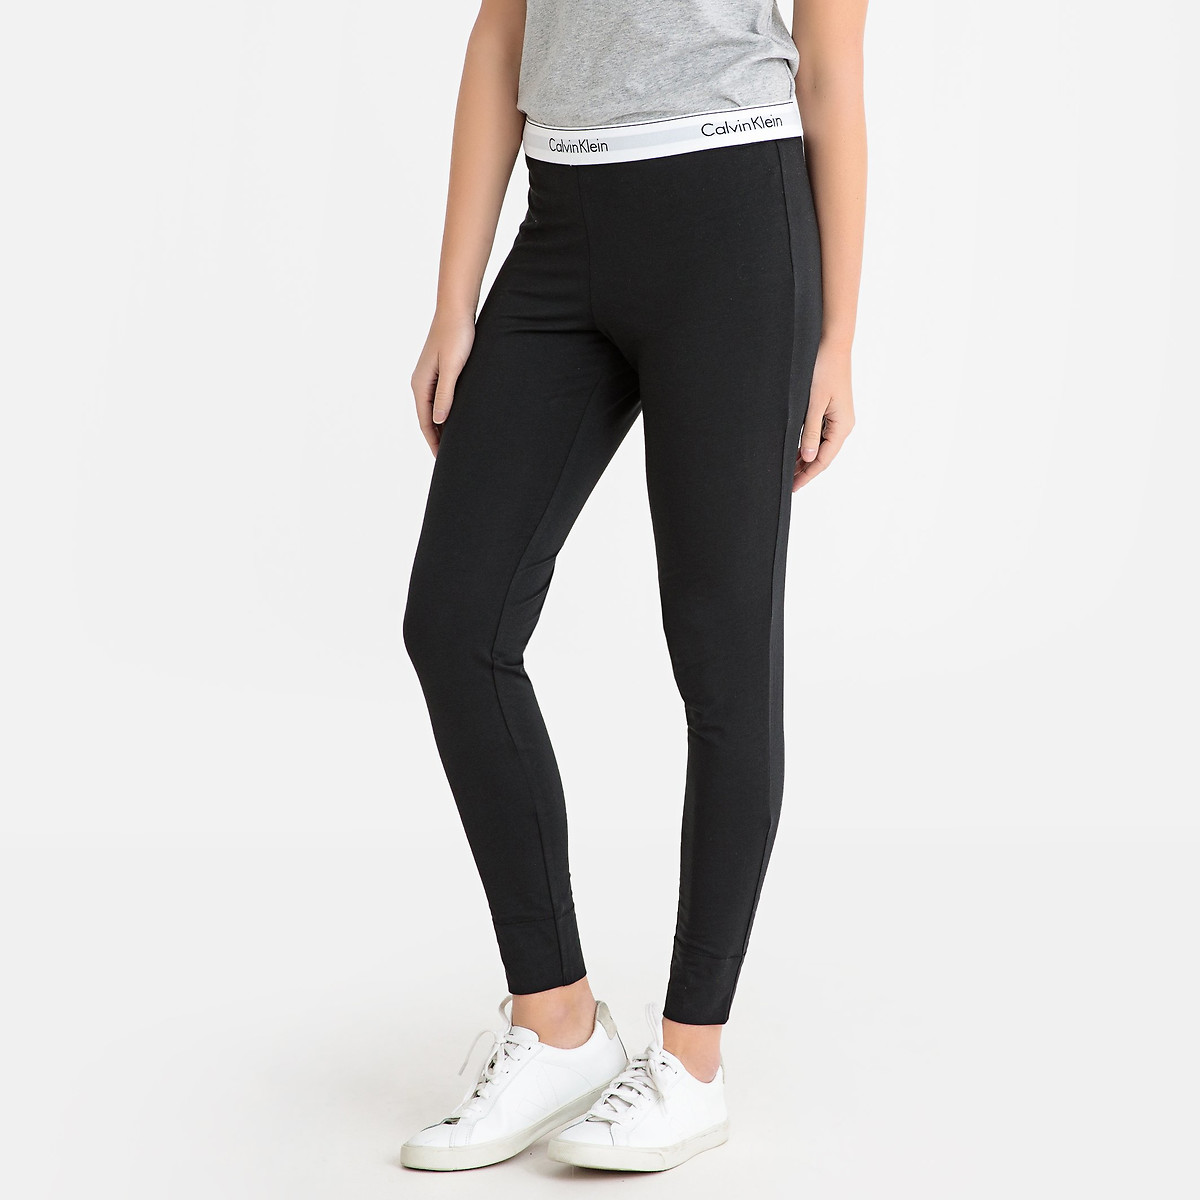 Modern cotton leggings, black, Calvin Klein Underwear